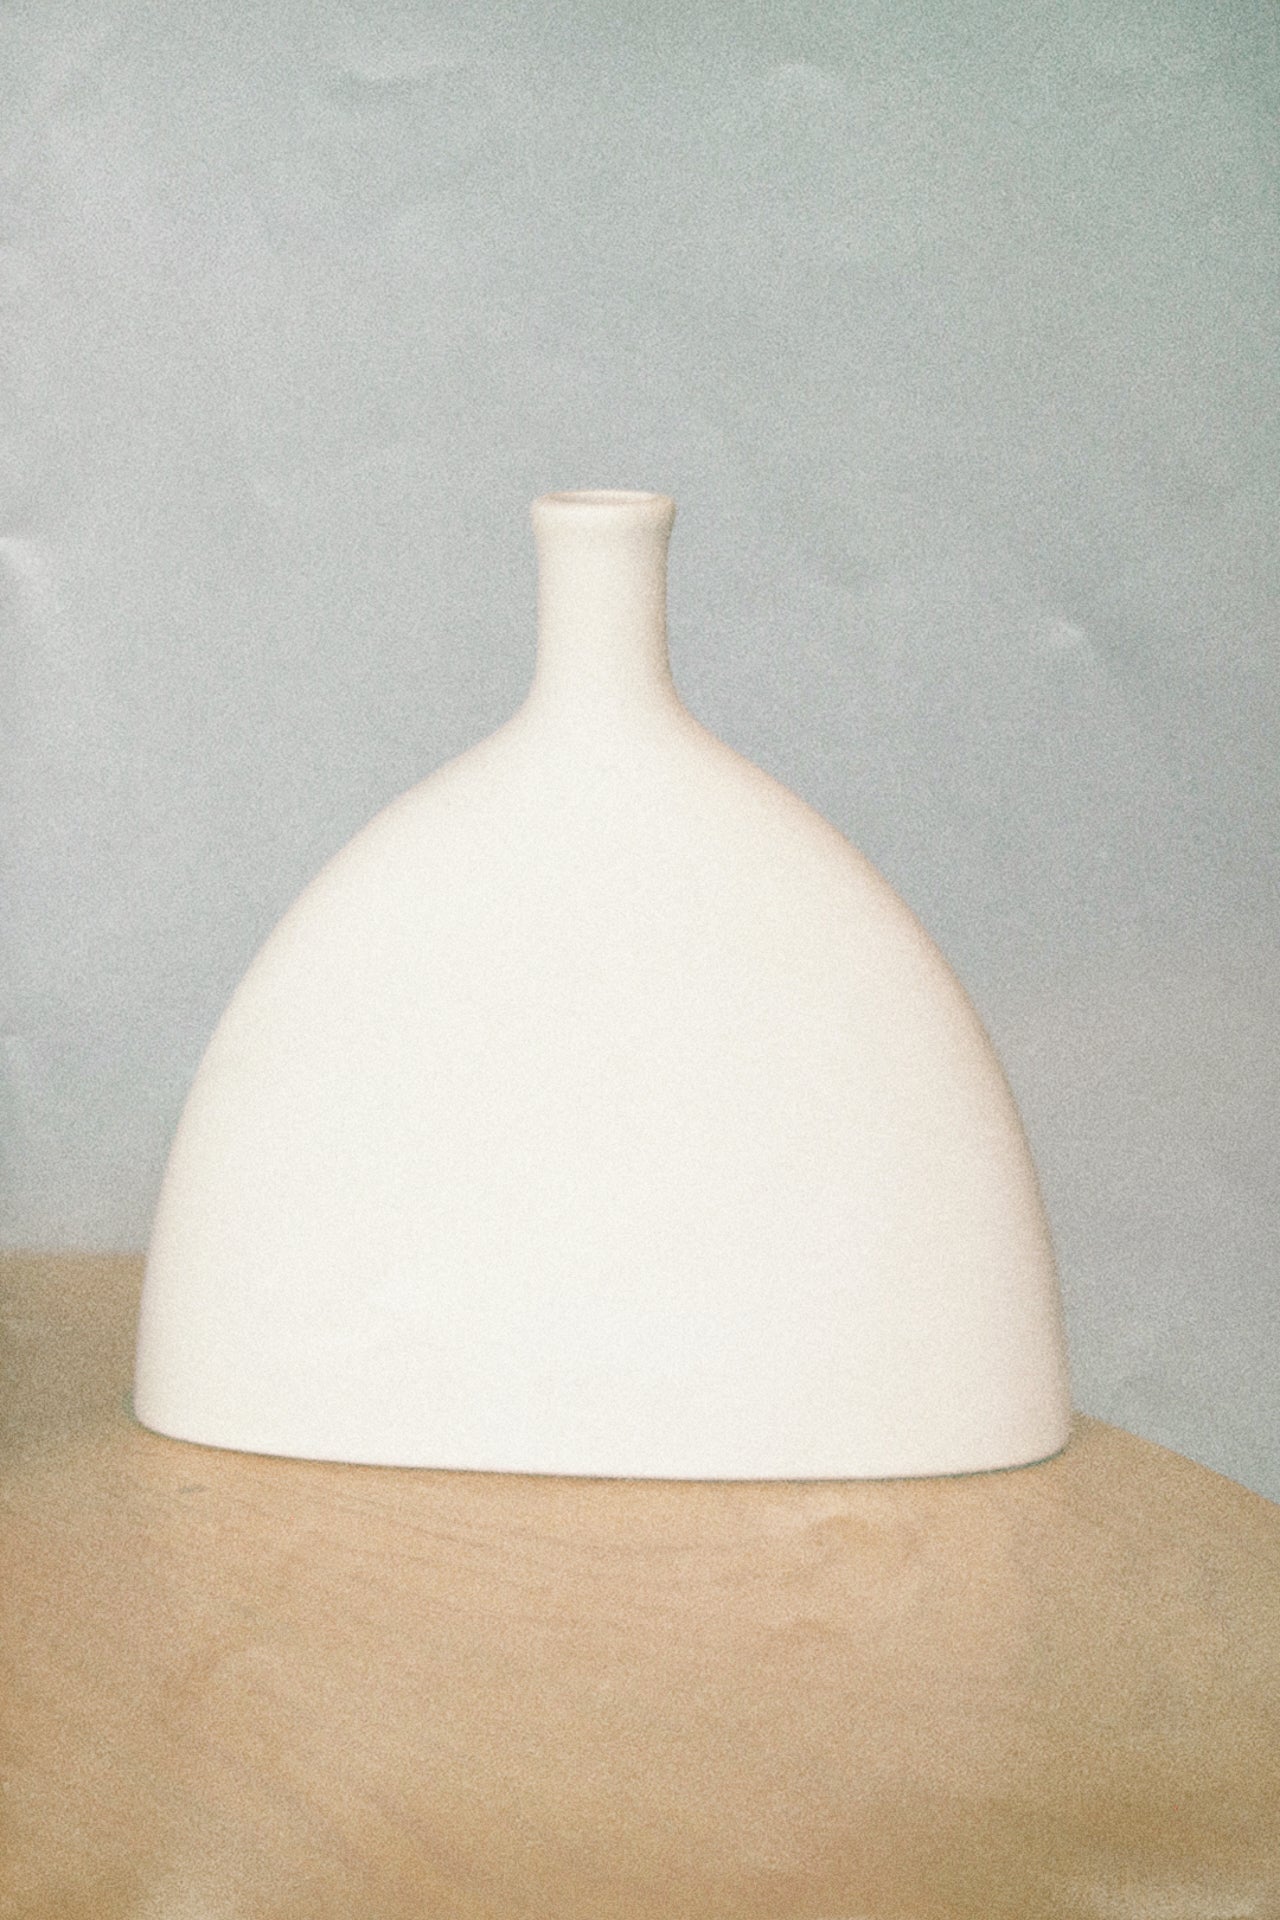 The Allie Vase